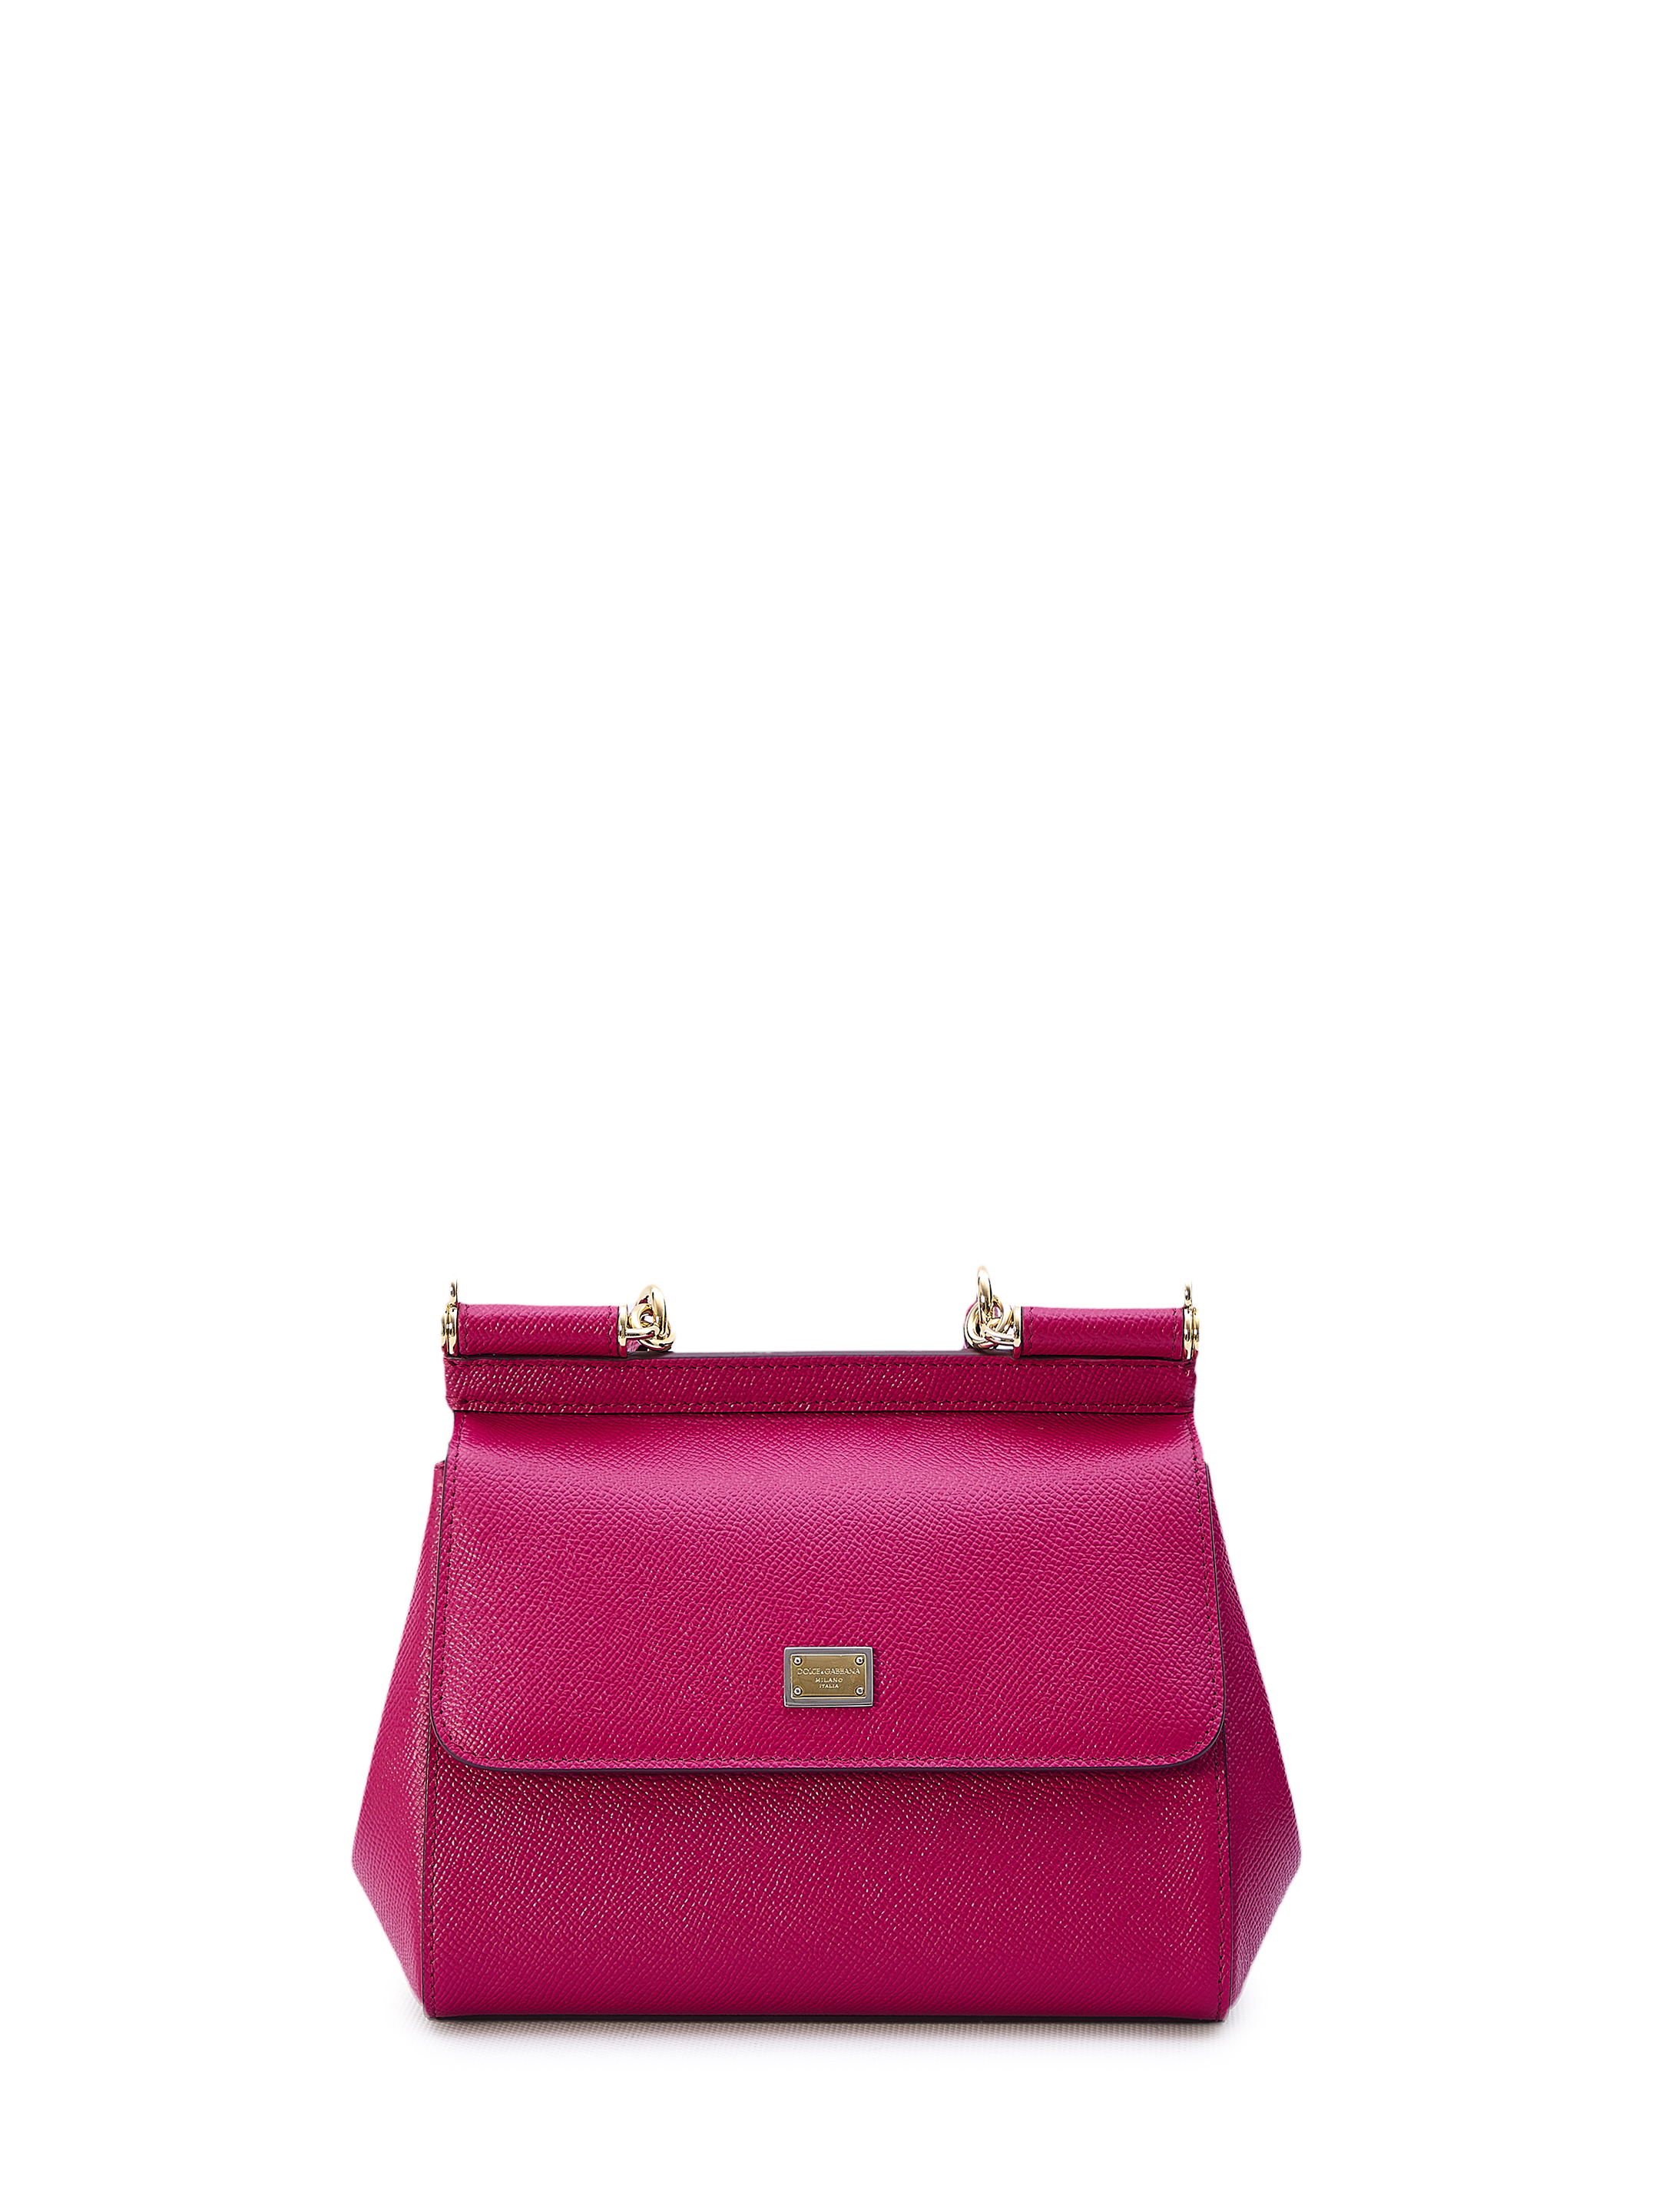 Сумка Dolce&Gabbana Small Sicily, фиолетовый дорожная сумка с одним отделением и съемным ремнем blackwood albion black